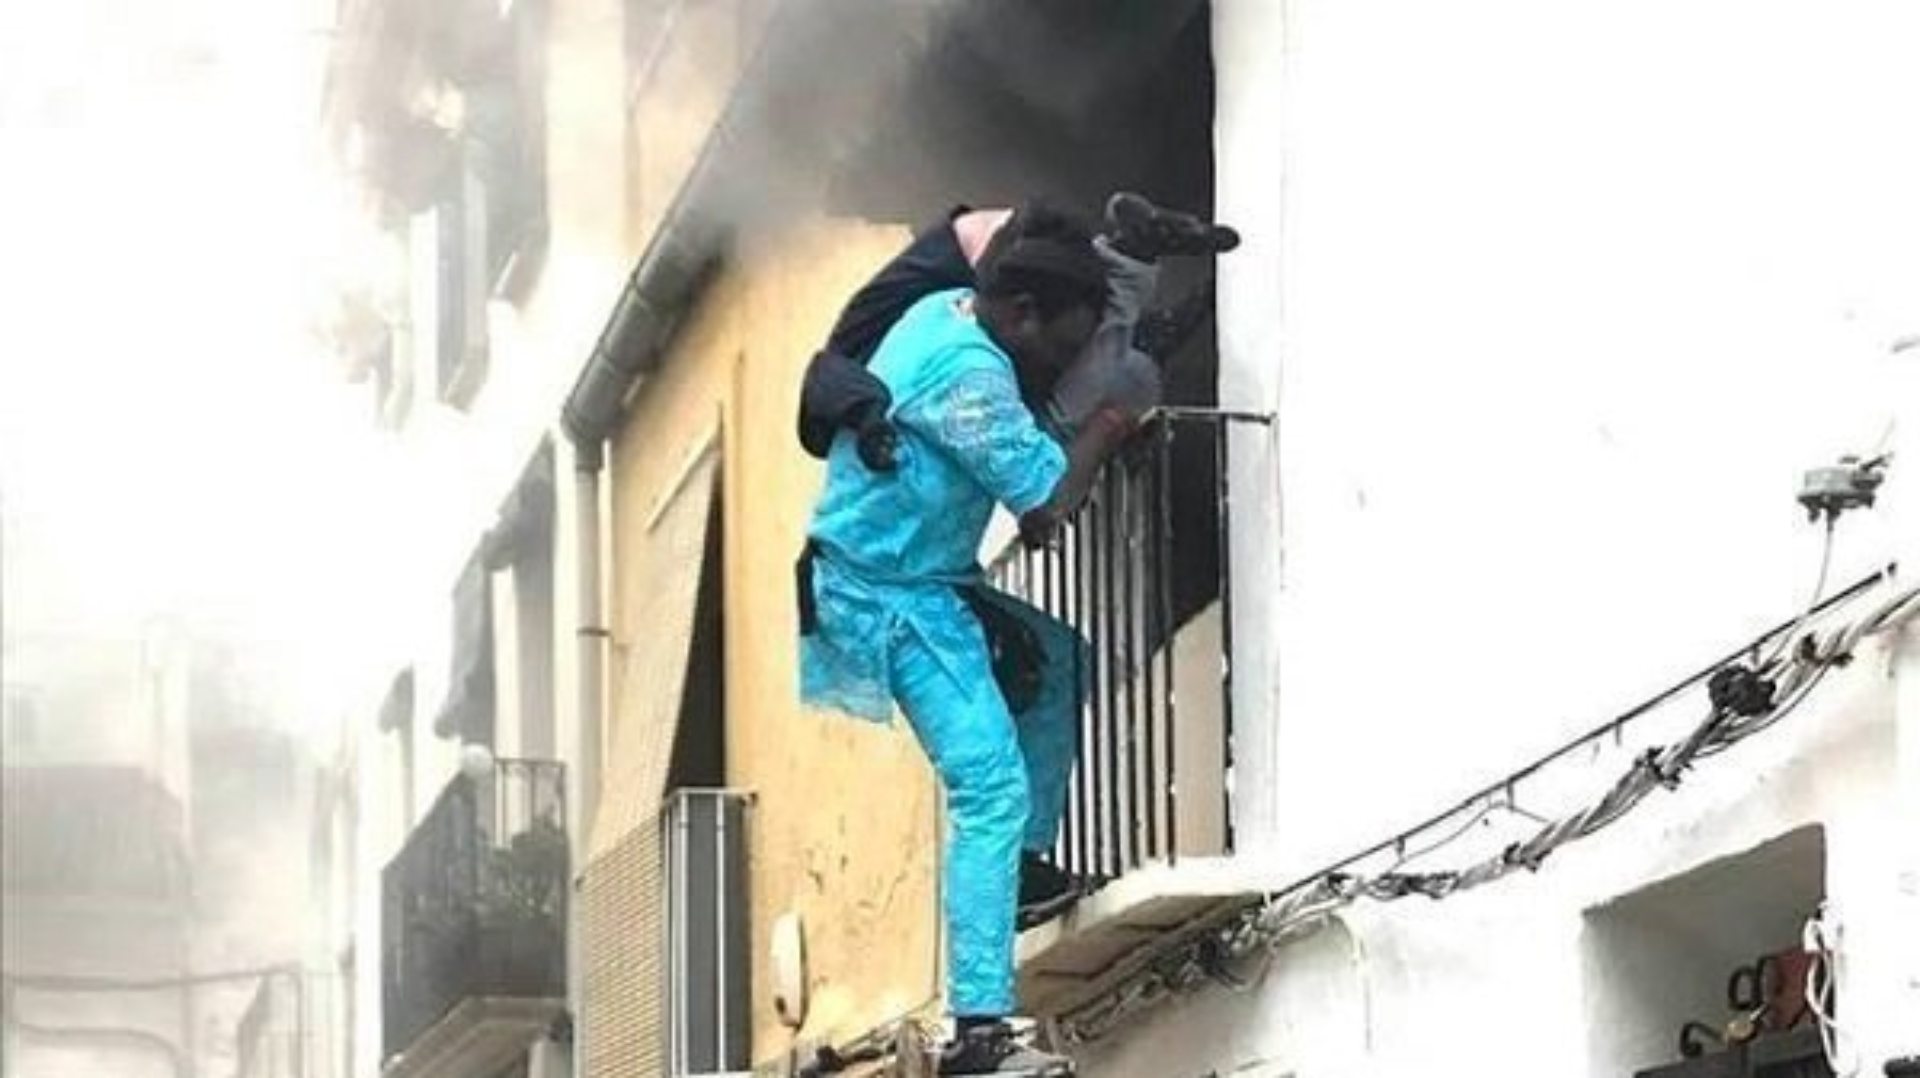 España estudia darle la nacionalidad al senegalés que rescató a otro hombre en un incendio